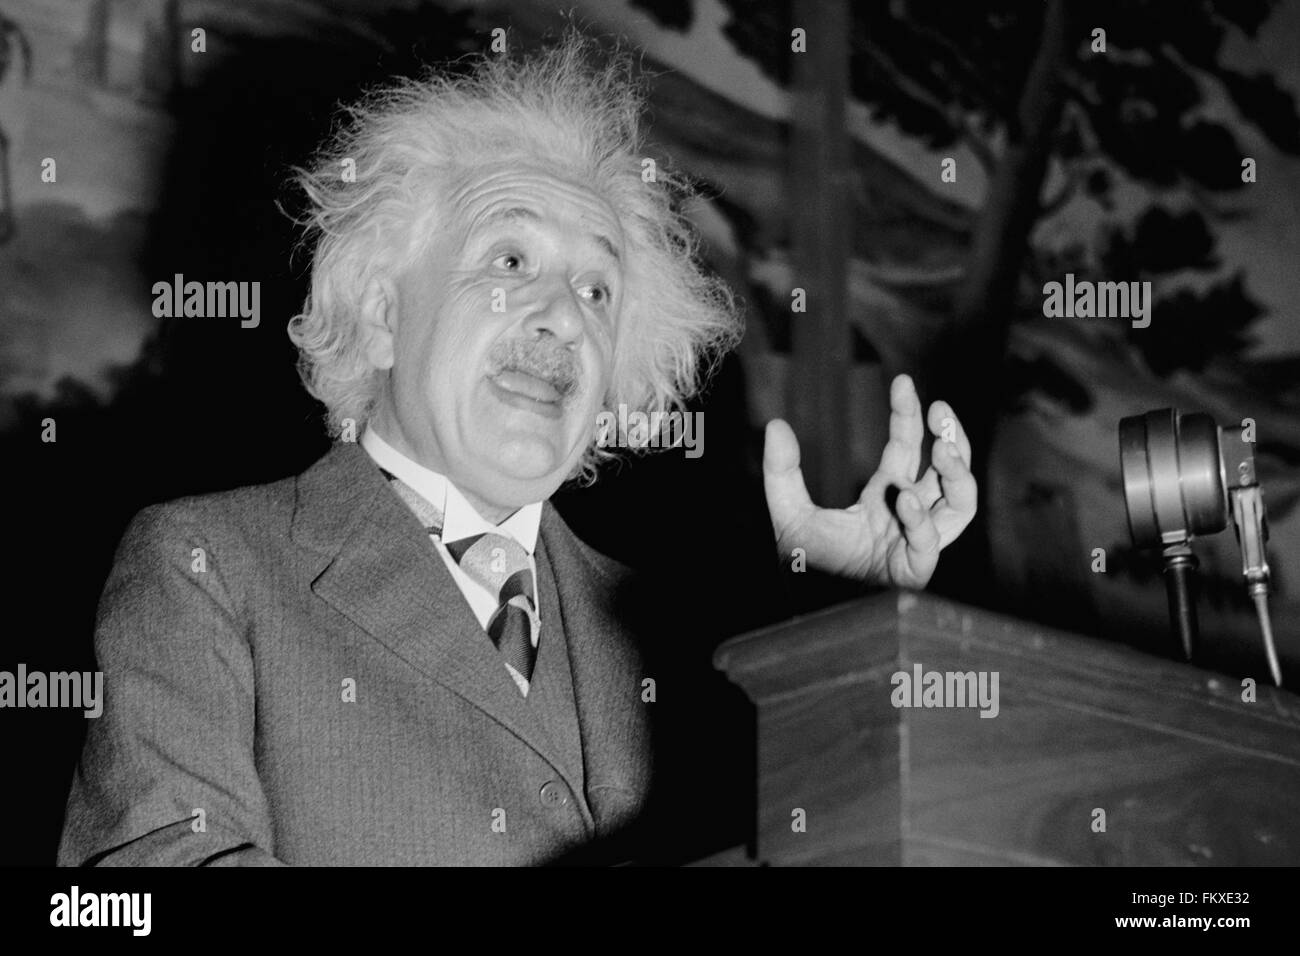 Albert Einstein sprechenden c1940. Stockfoto